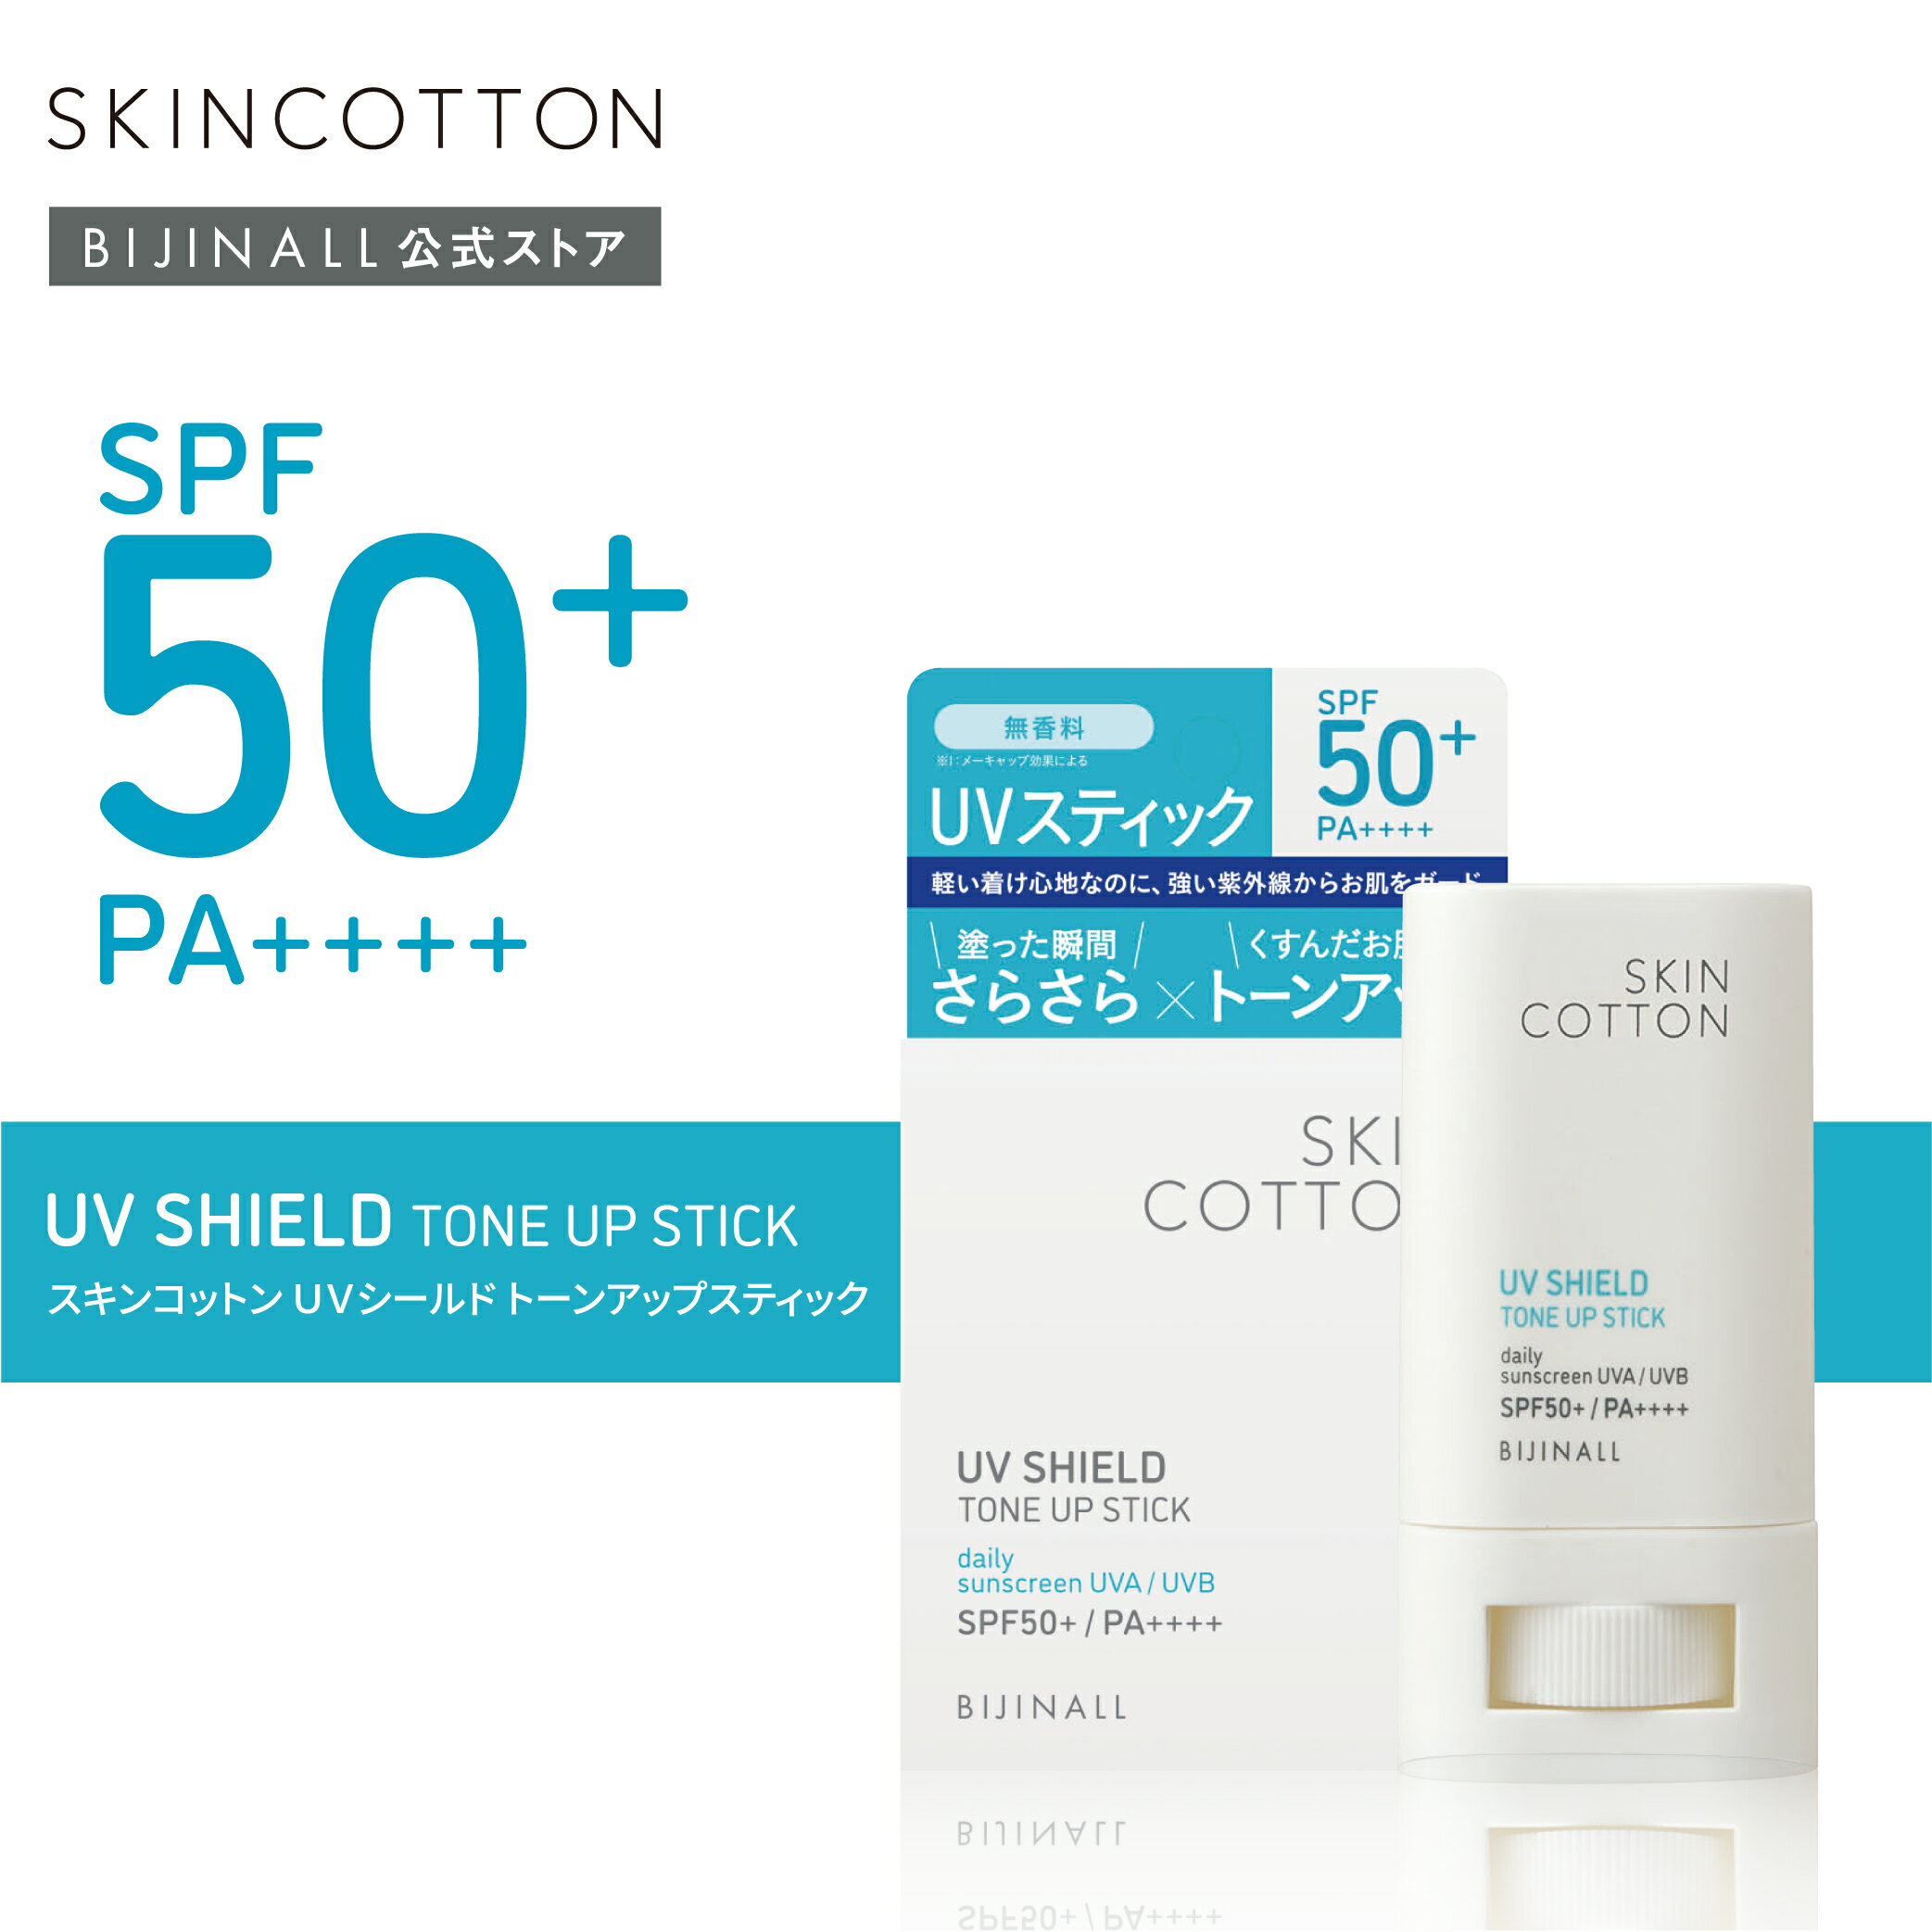 【公式】 スキンコットン UVシールド トーンアップスティック SPF50+/PA++++ skincotton 簡易包装